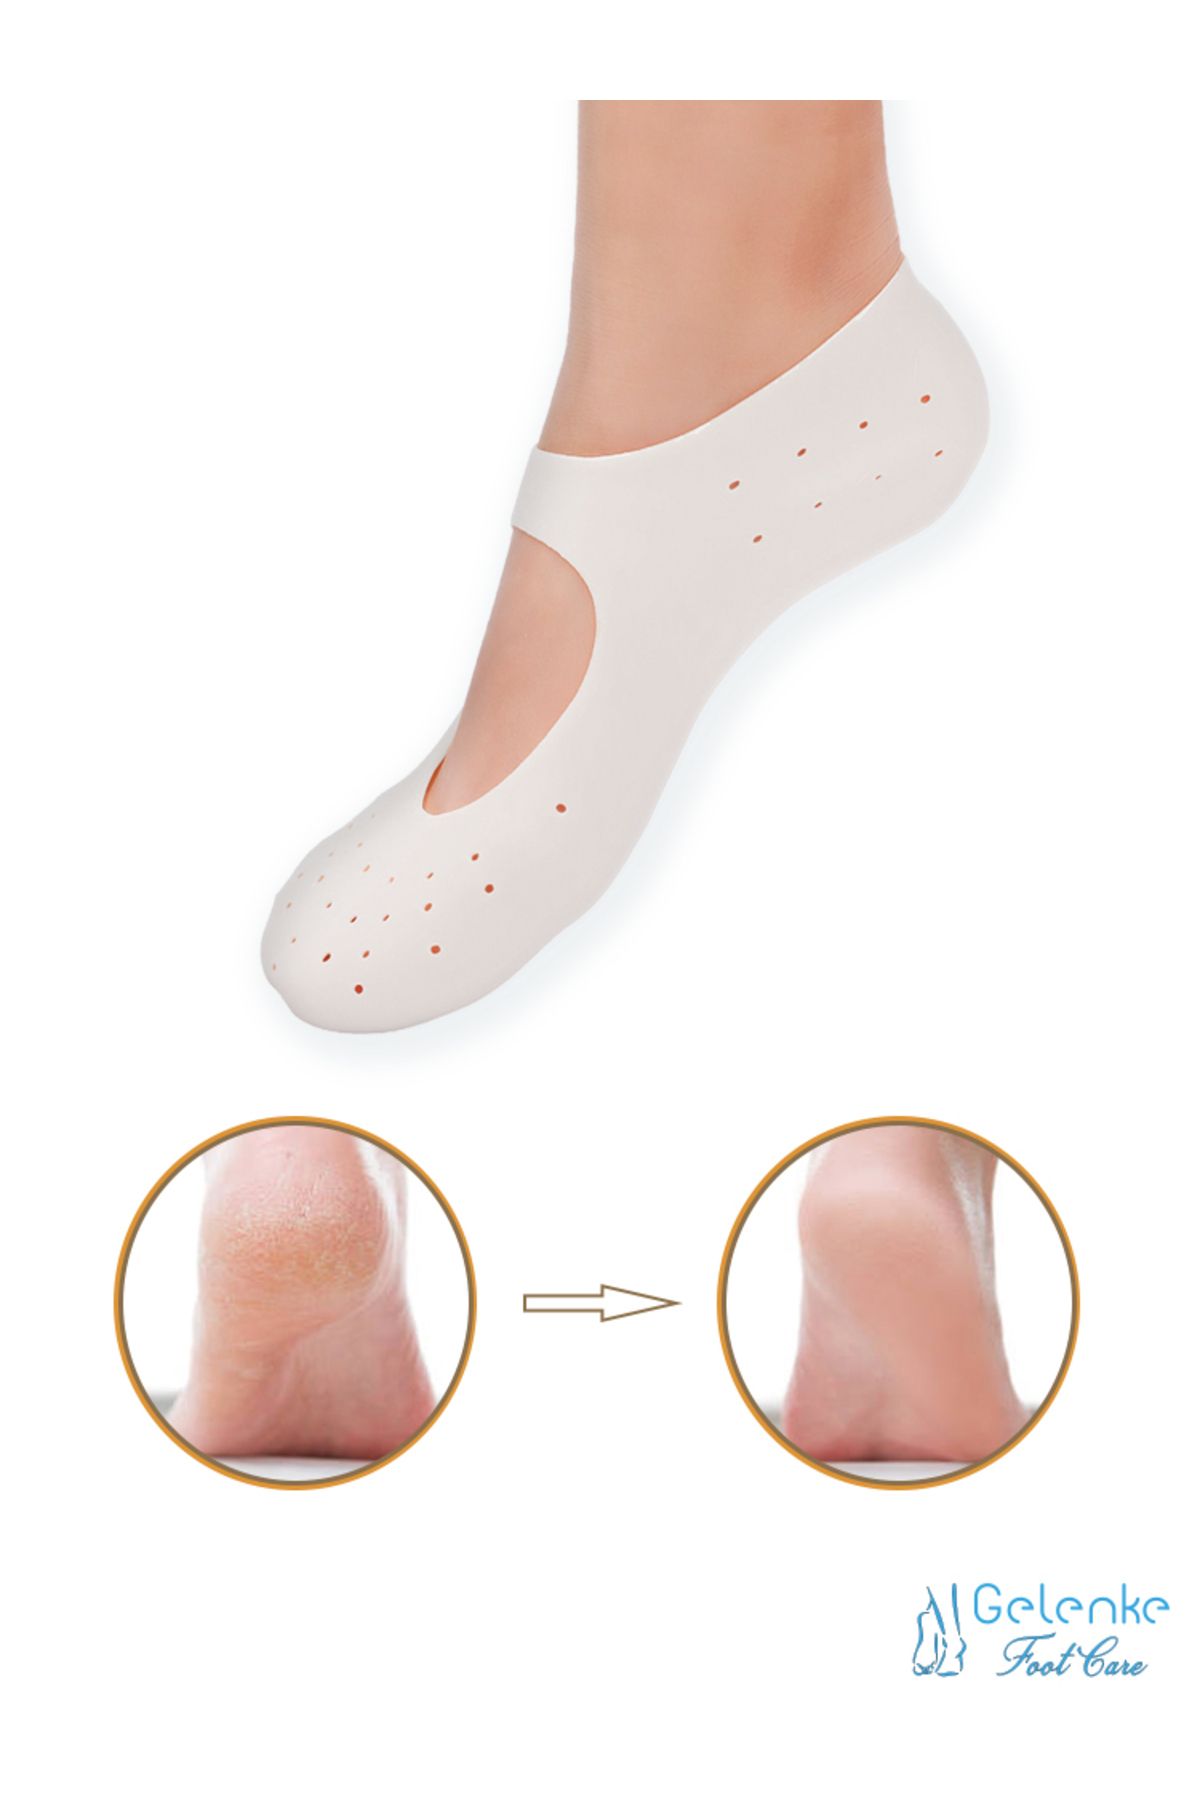 Gelenke Ayak Bakım Çorabı Yumuşak Silikon Patik Çorap Topuk Çatlak Giderici (Çift)